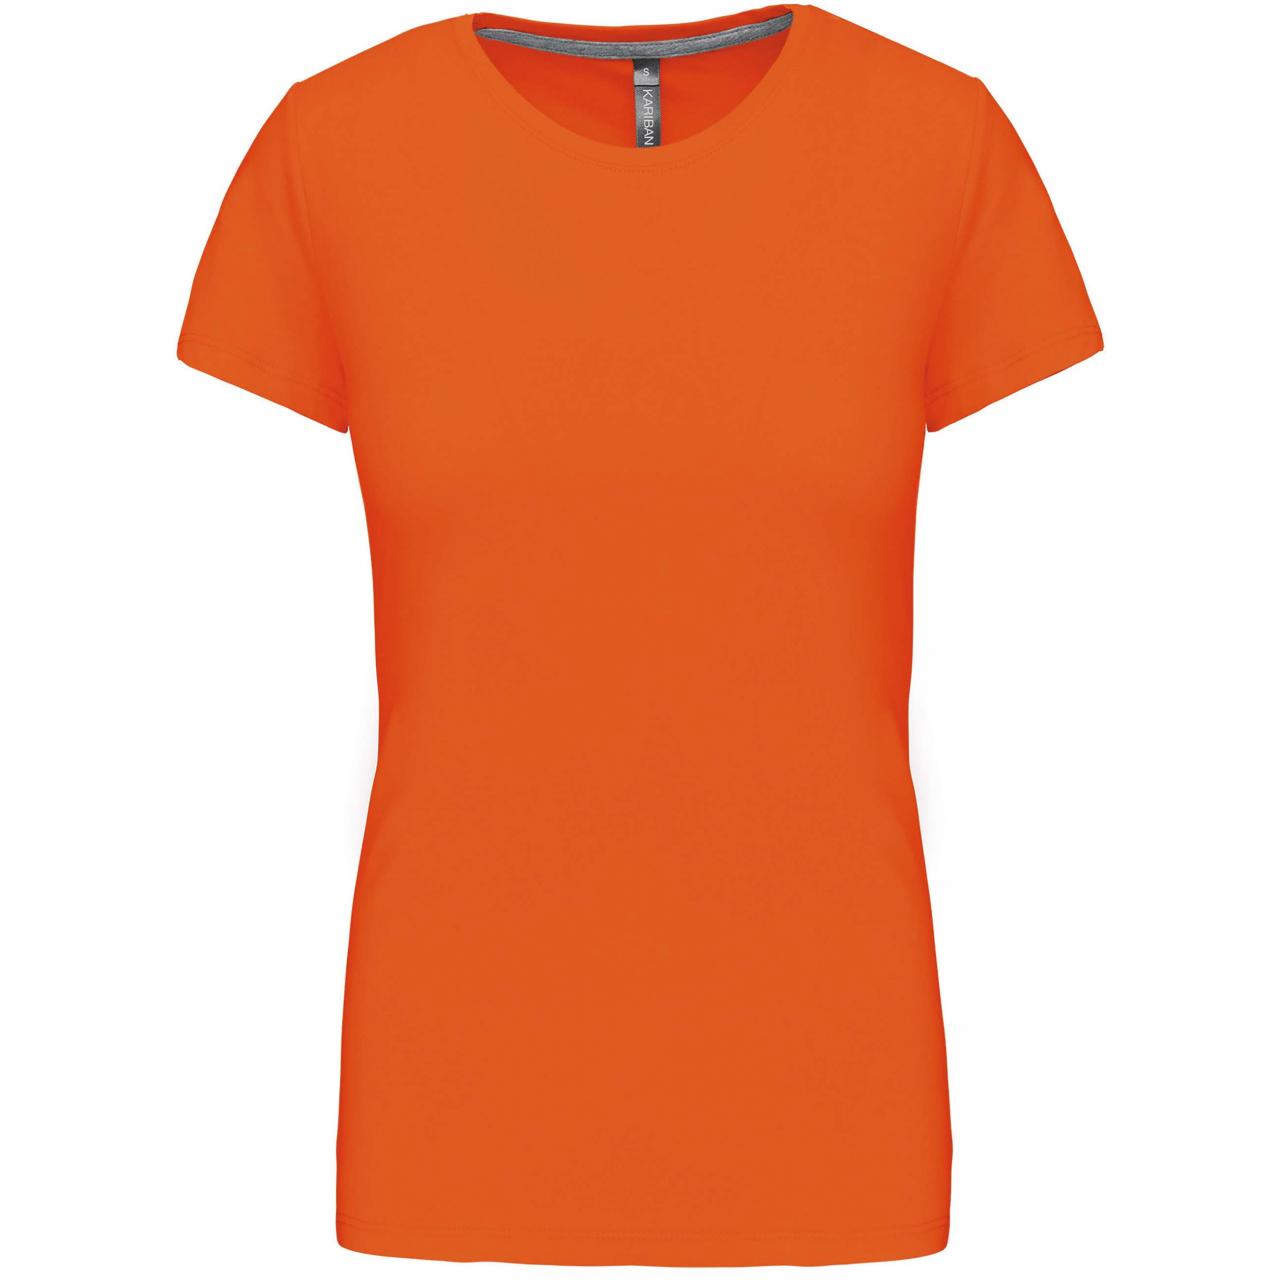 Dámské tričko Kariban s krátkým rukávem - oranžové, L